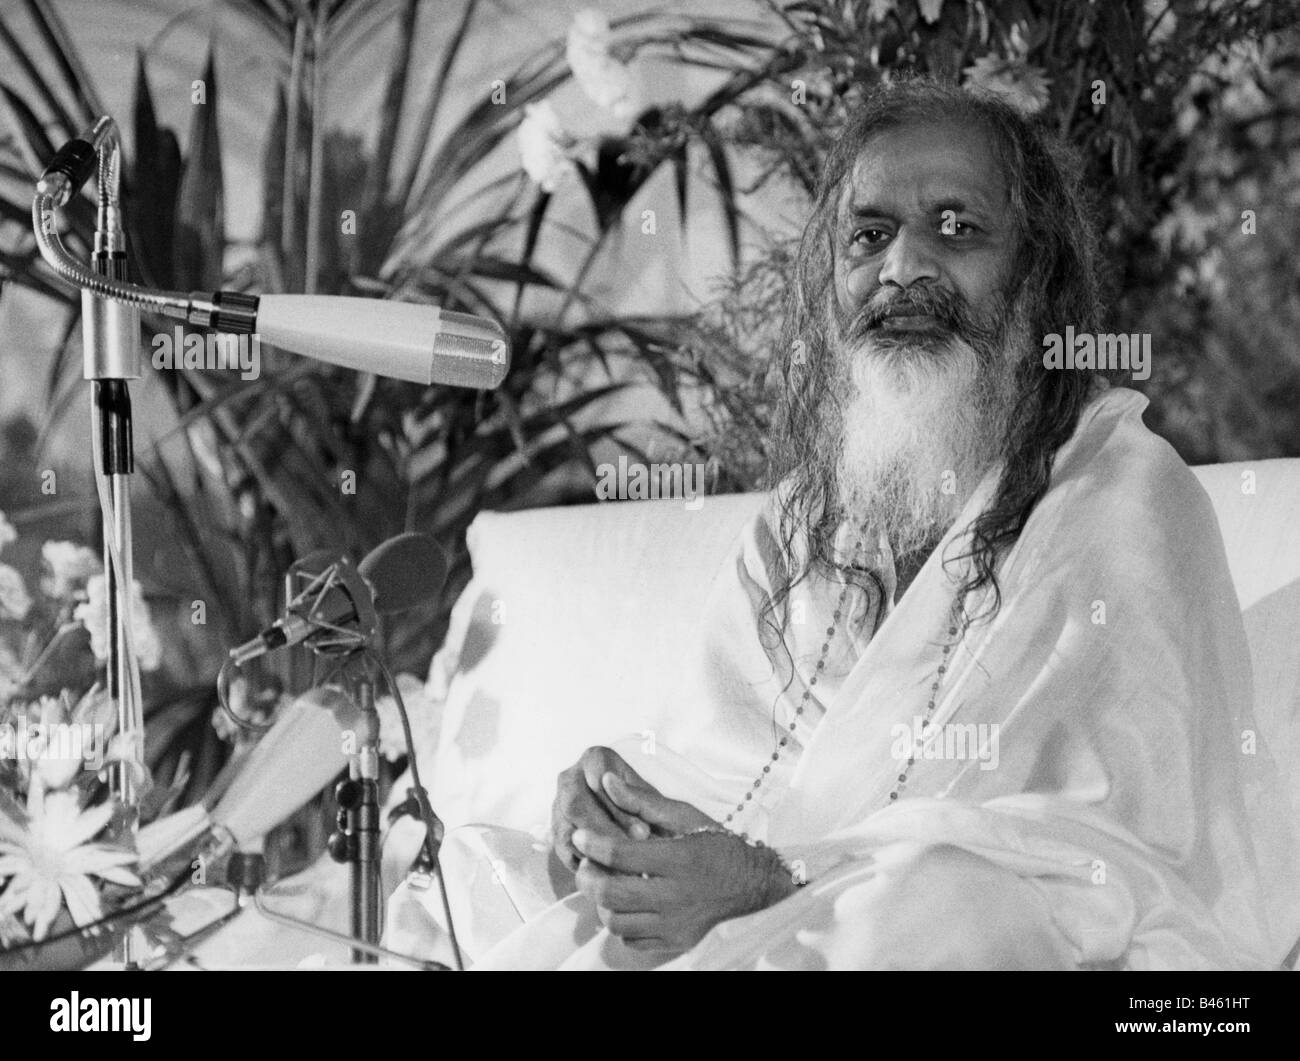 Maharishi mahesh Black and White Stock Photos & Images - Alamy